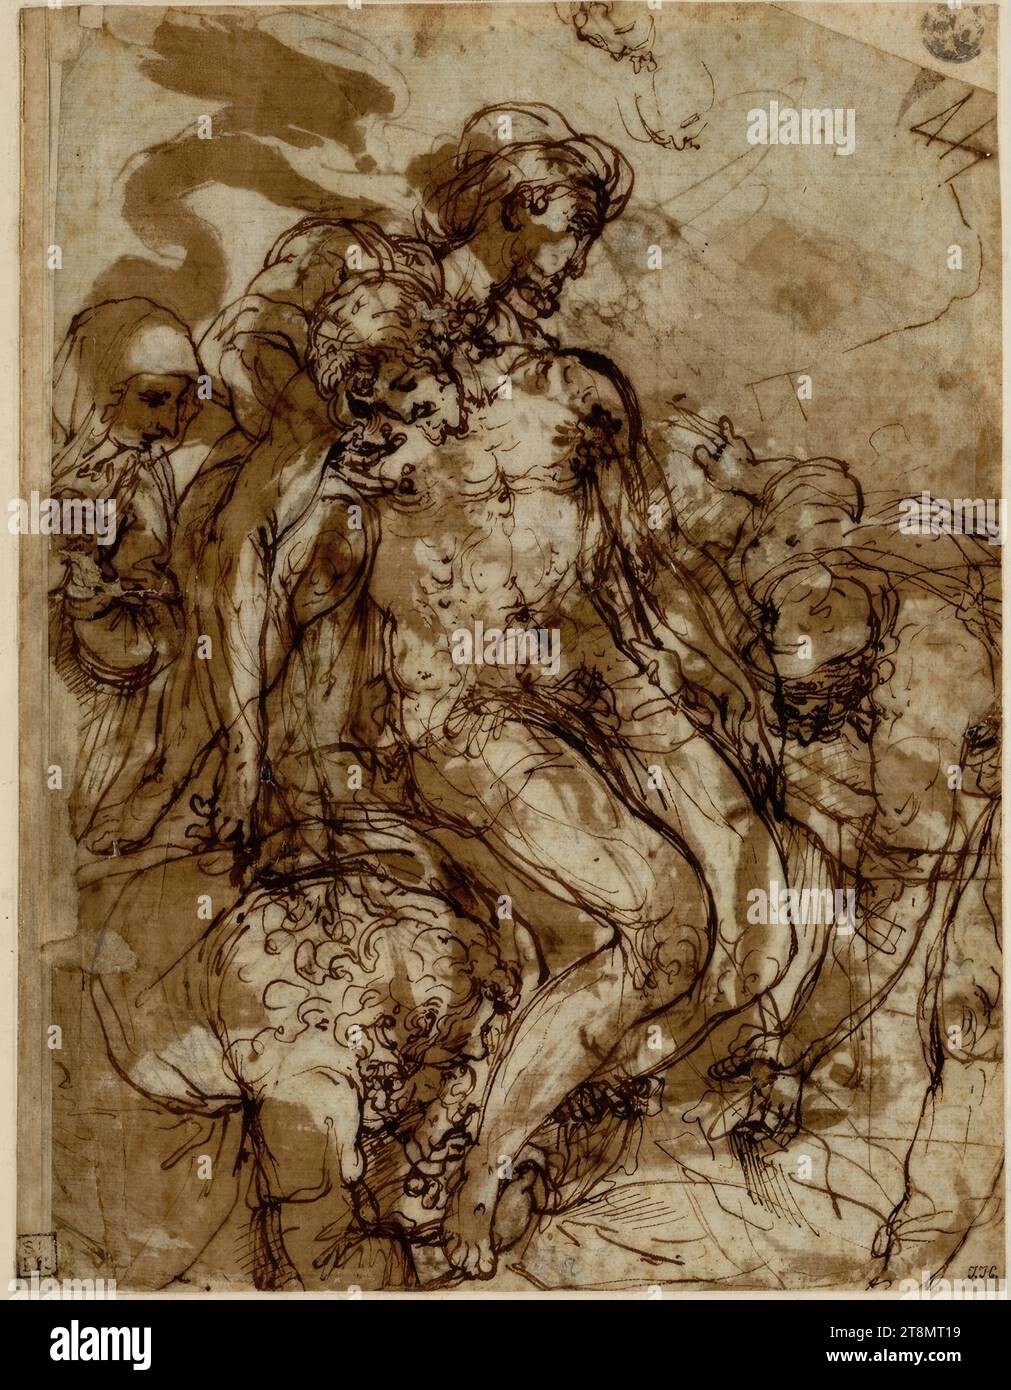 Studie über die Kreuzigung, Federico Zuccari (Sant' Angelo in Vado 1540/41 - 1609 Ancona), Zeichnung, Feder; Tinte; gewaschen, 25,8 x 19,8 cm, r.u. Hudson; l.u. Reynolds; m.u. Herzog Albert von Sachsen-Teschen Stockfoto